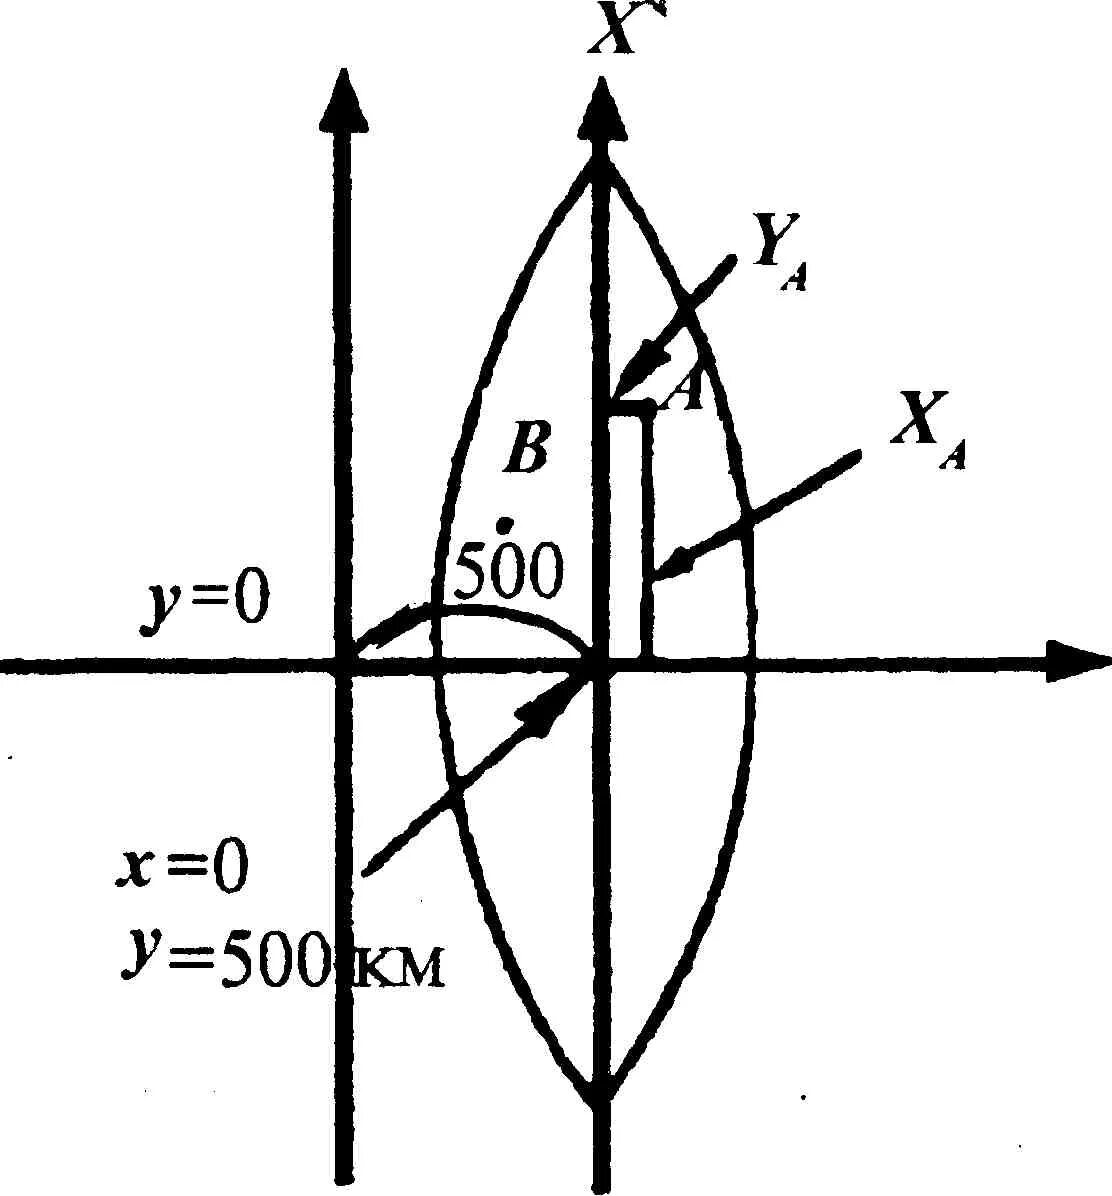 Осевой меридиан. Зональная прямоугольная система координат Гаусса-Крюгера. Прямоугольная система координат Гаусса Крюгера. Система плоских прямоугольных координат Гаусса-Крюгера. Система плоских прямоугольных координат в проекции Гаусса.